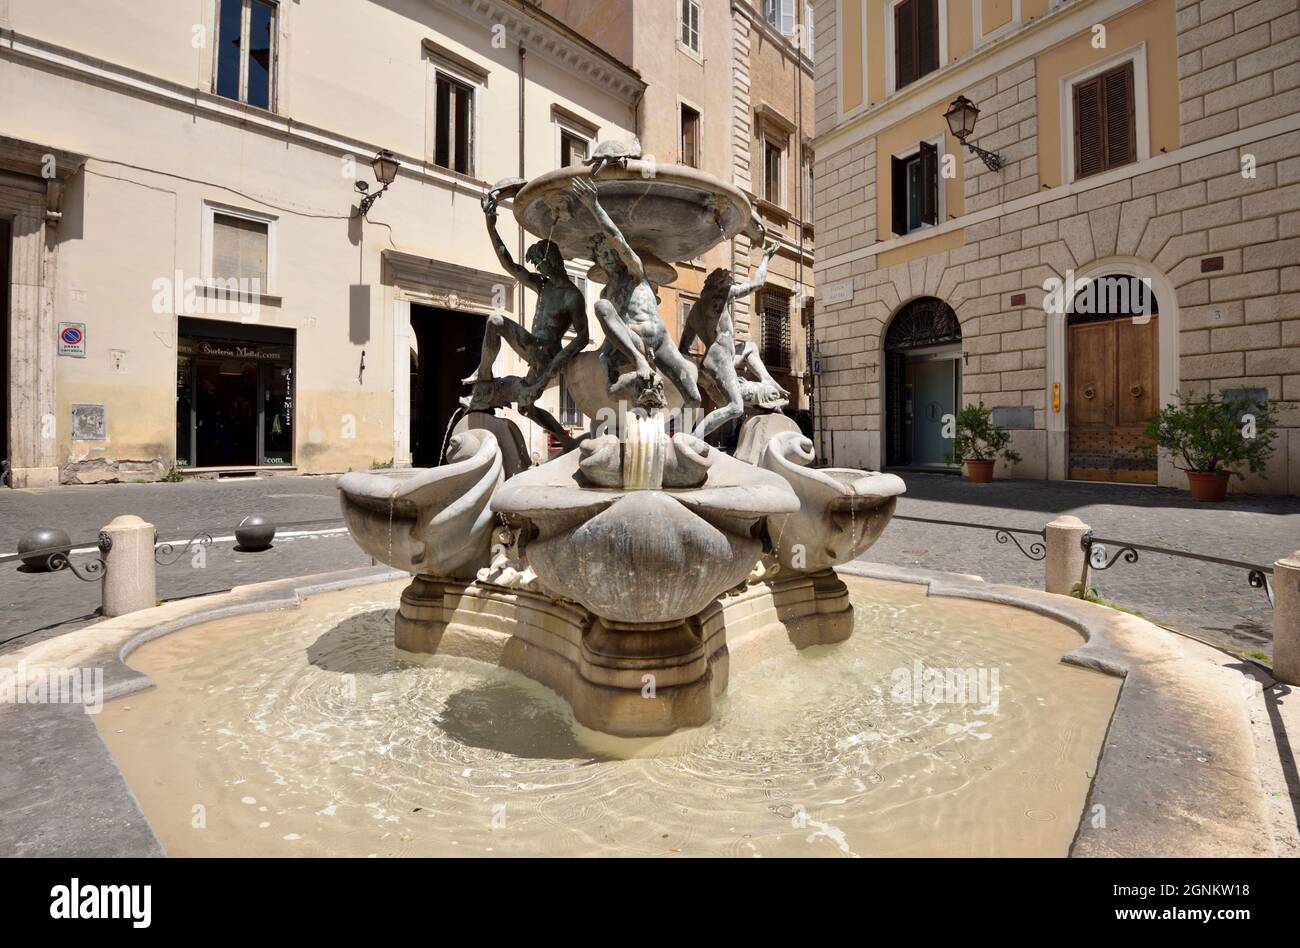 Italie, Rome, Ghetto juif, Piazza Mattei, fontaine aux tortues Banque D'Images